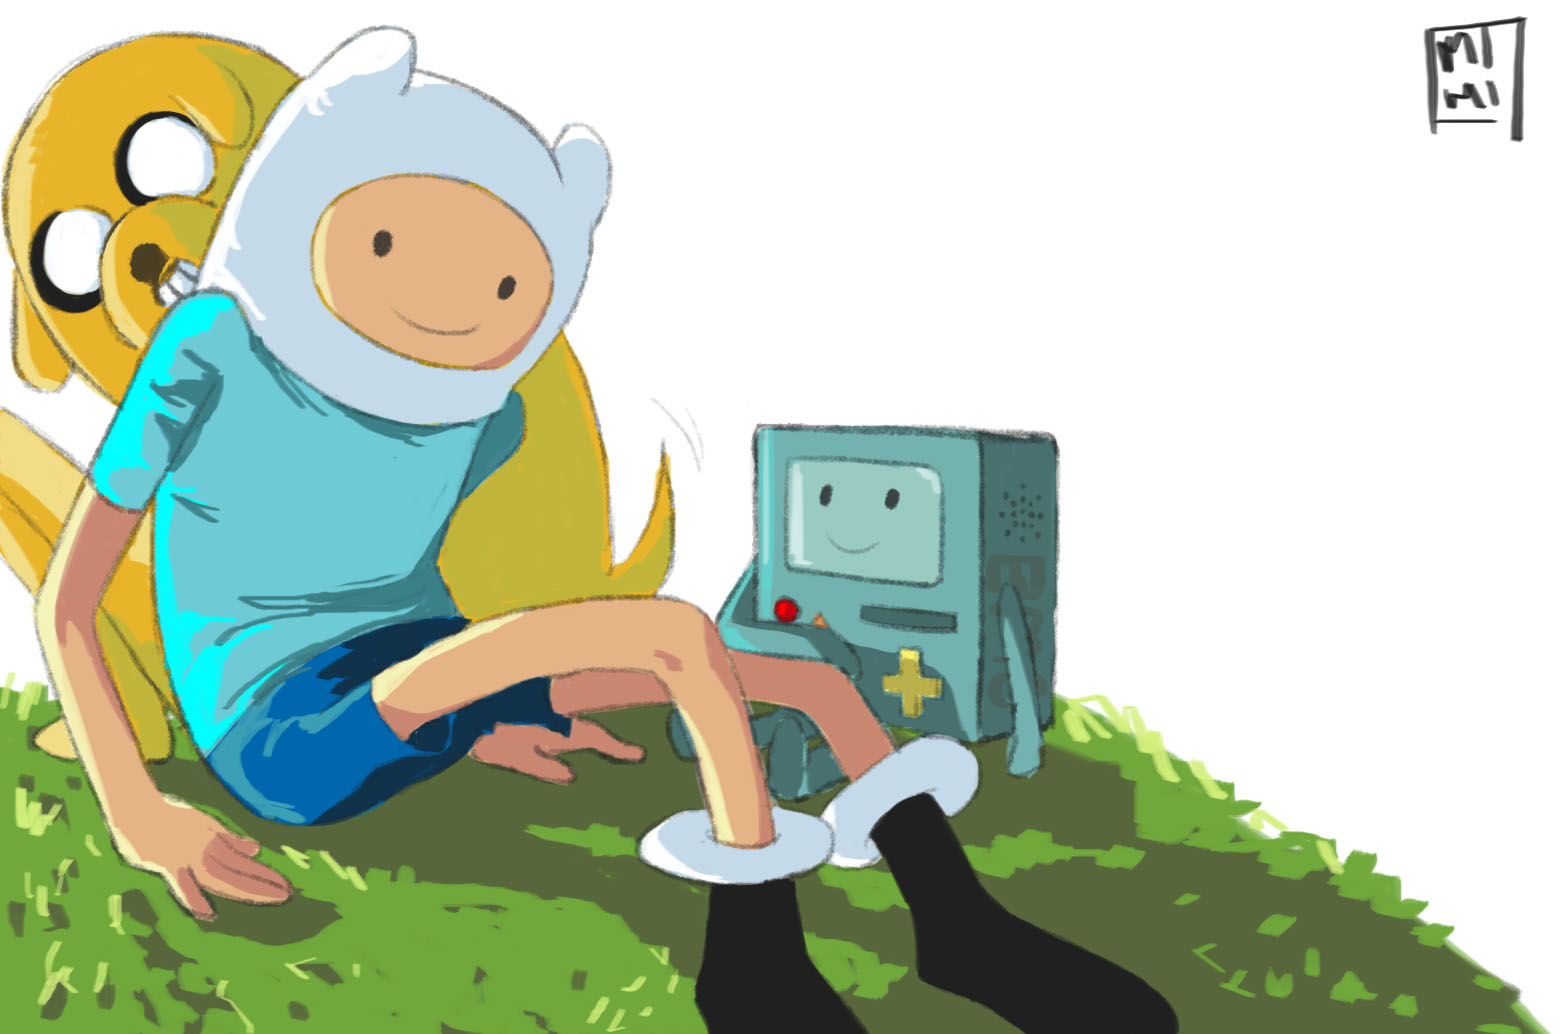 Приключения финна слушать аудиокнигу. Маг Животворец время приключений. Tree Trunks Adventure time fanart.